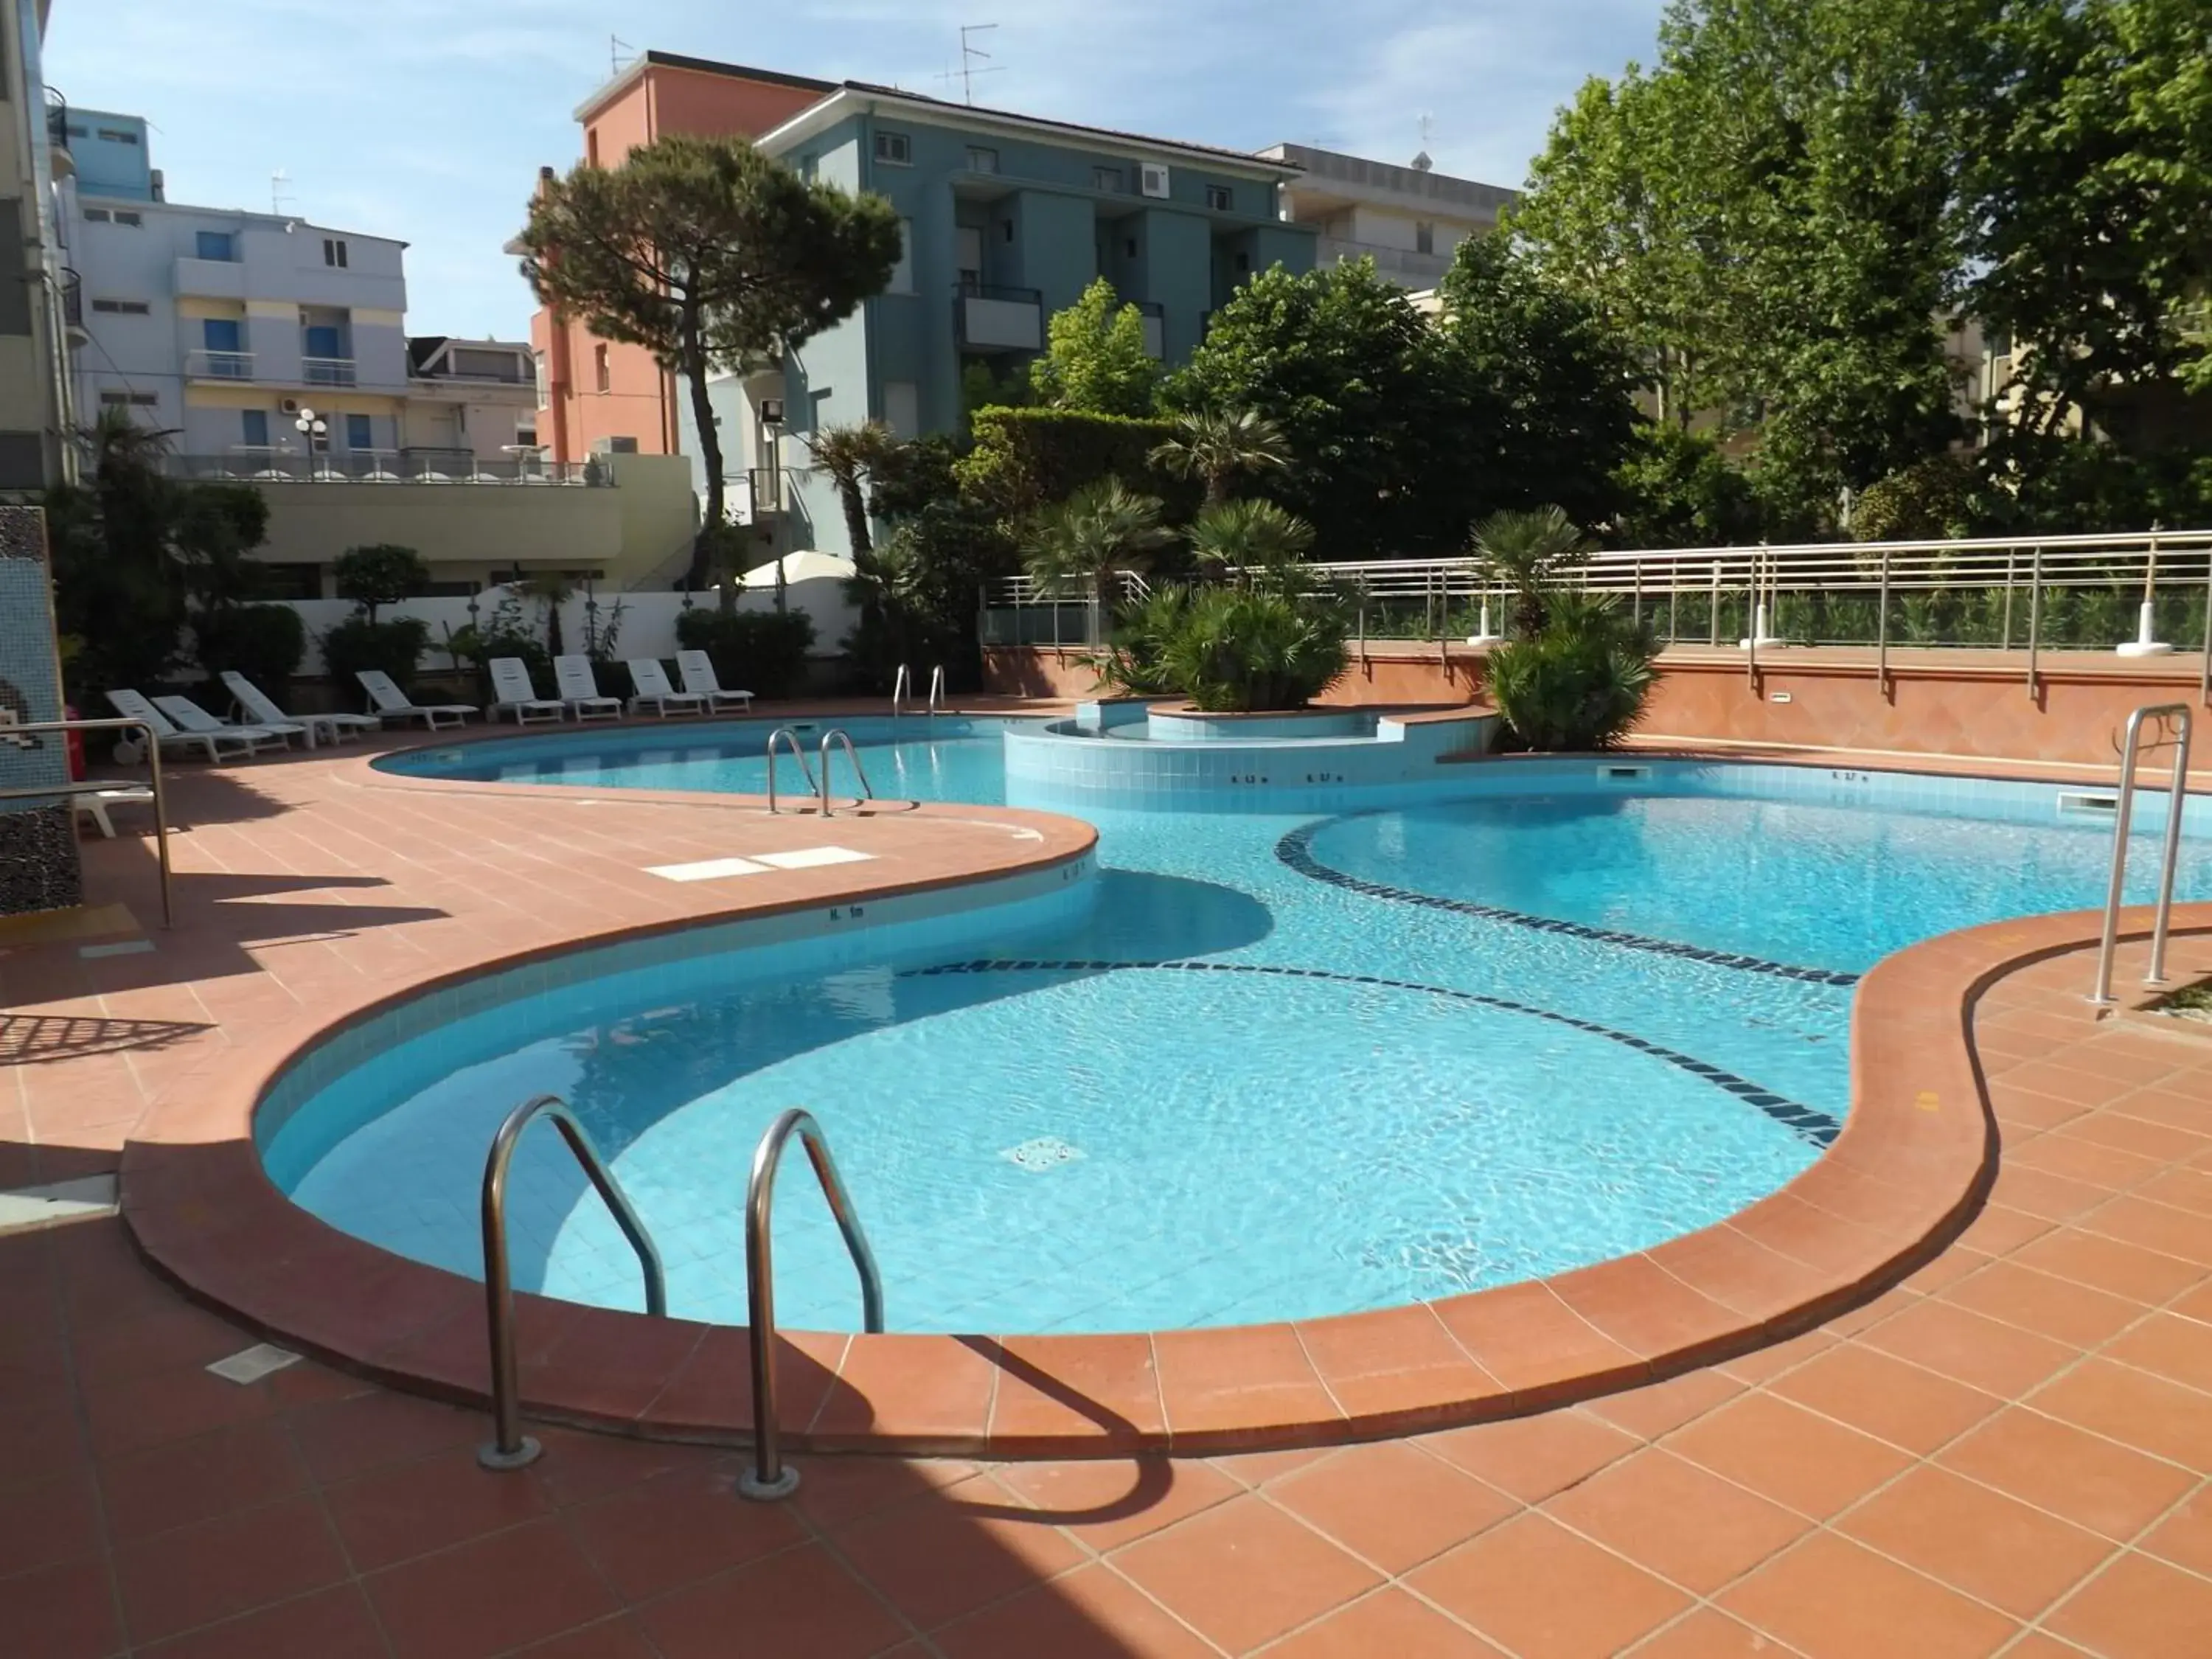 Swimming Pool in San Giorgio Savoia